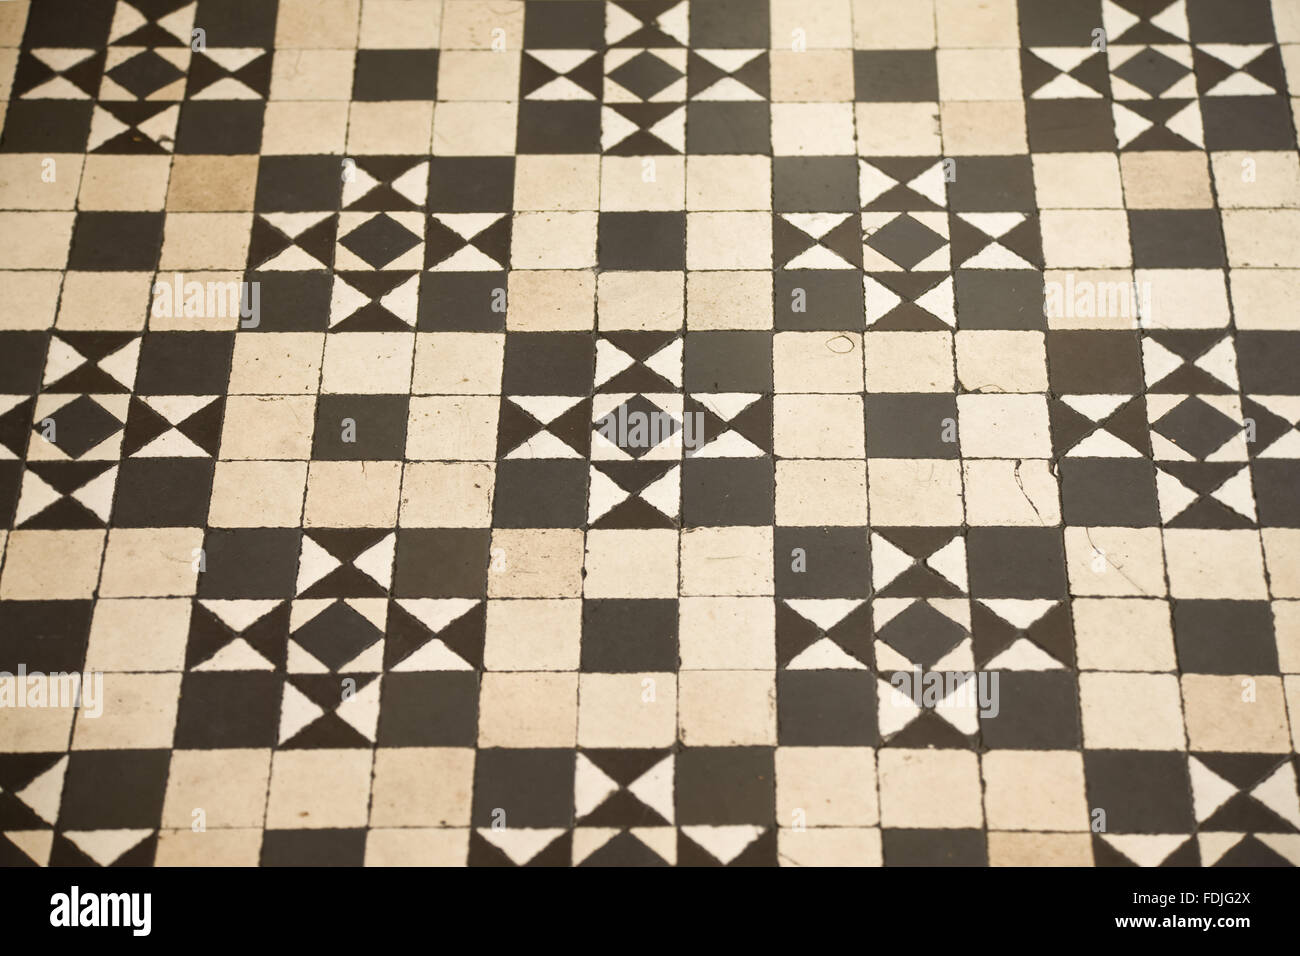 Carrelage noir et blanc géométrique du plancher dans le bar de la Couronne,  Great Victoria Street, Belfast. Autrefois connu sous le nom de Crown Liquor  Saloon, le pub bâtiment date de 1826